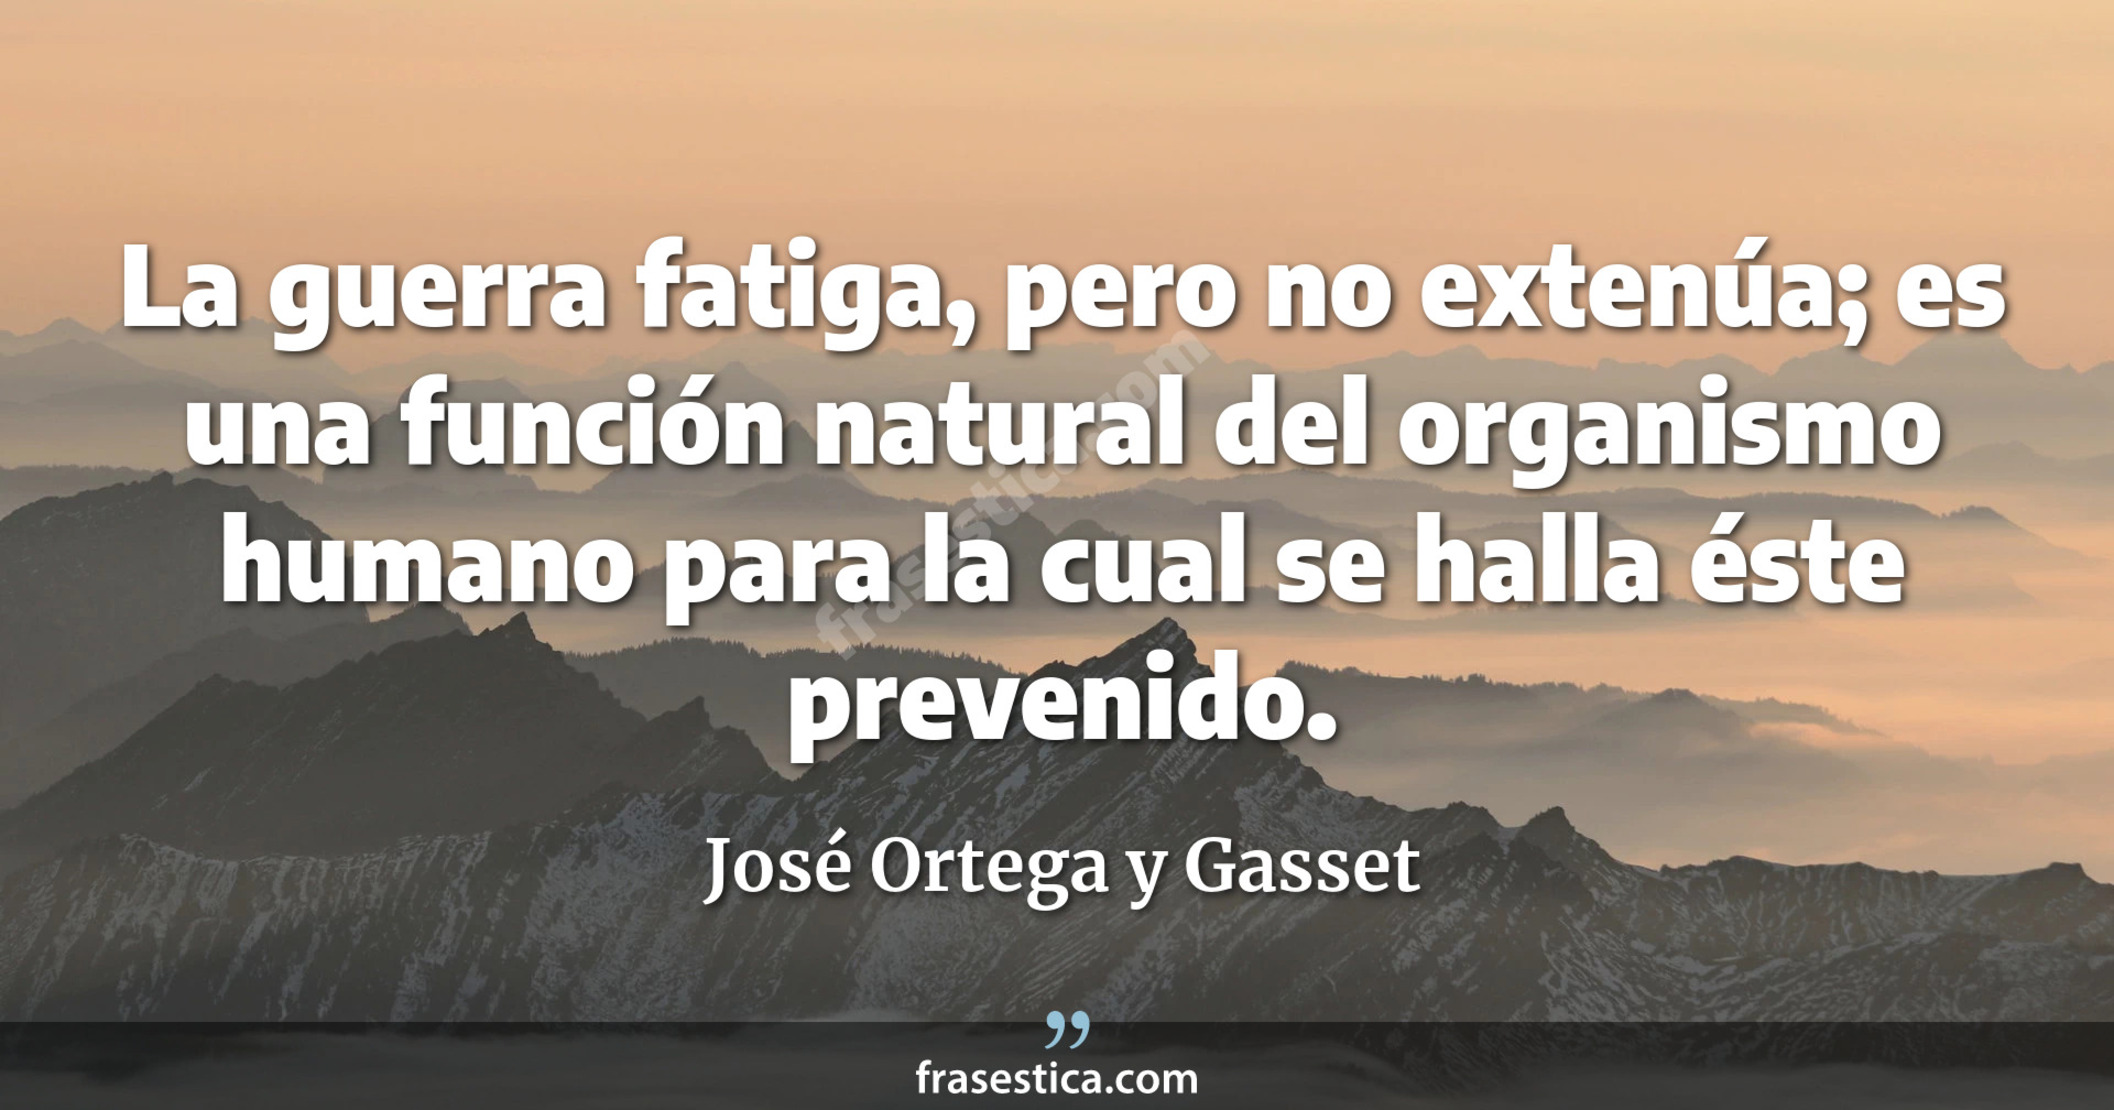 La guerra fatiga, pero no extenúa; es una función natural del organismo humano para la cual se halla éste prevenido. - José Ortega y Gasset